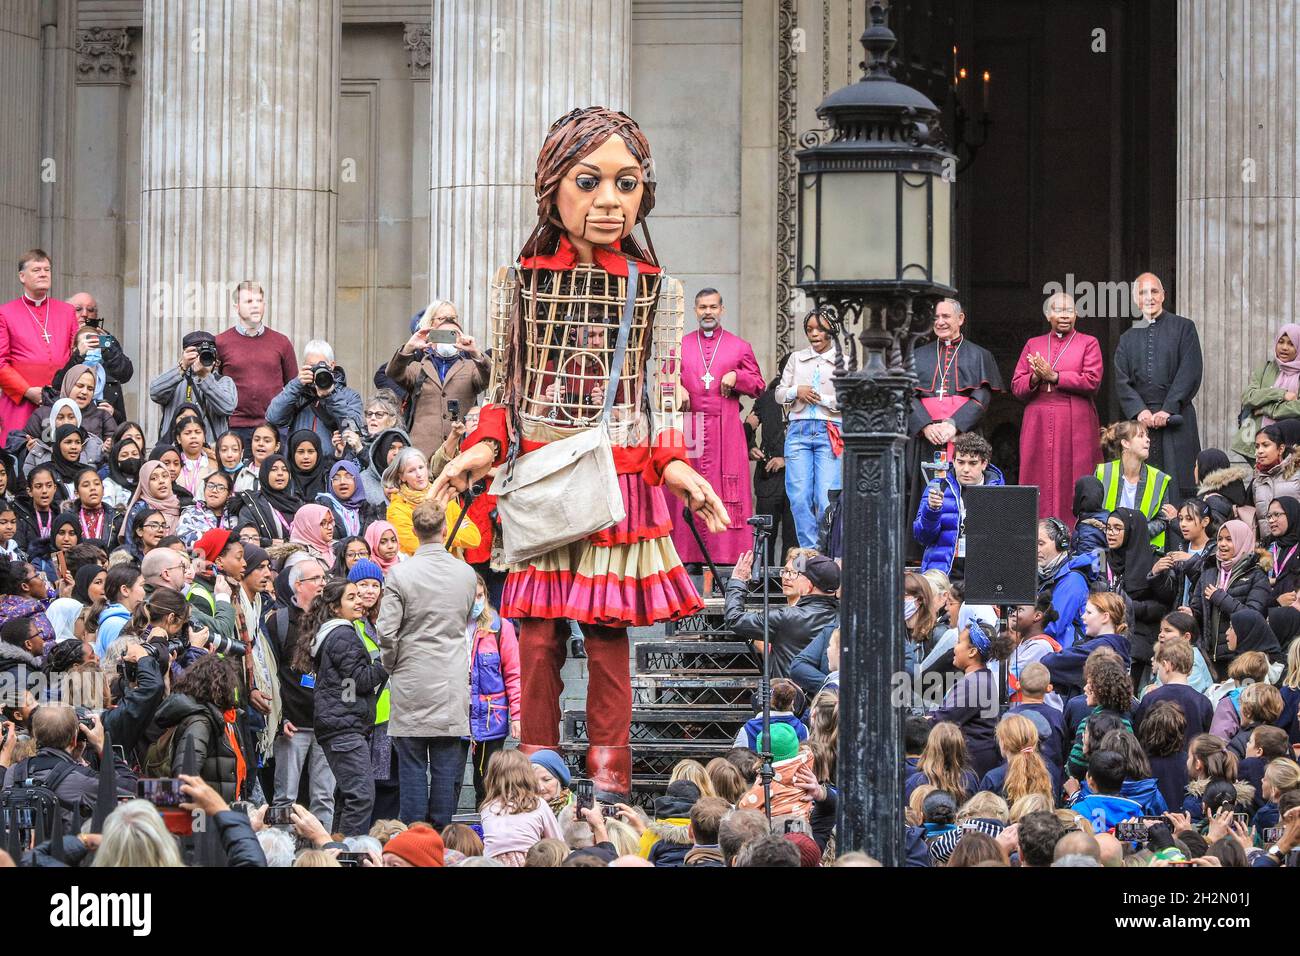 Cathédrale Saint-Paul, Londres, Royaume-Uni.22 octobre 2021.Marionnette de réfugiés géante Little Amal à la cathédrale Saint-Paul ce matin.Little Amal atteint la fin de la « promenade », un voyage de quatre mois au-dessus de la terre de la Turquie à la Grande-Bretagne.Amal représente une fille réfugiée syrienne, âgée de 9 ans.Elle est remise une lettre par une petite fille à l'extérieur de la cathédrale, puis fait brièvement son chemin pour être accueillie par les chefs de foi, les chorales d'enfants locaux et les membres du public.Credit: Imagetraceur/Alamy Live News Banque D'Images